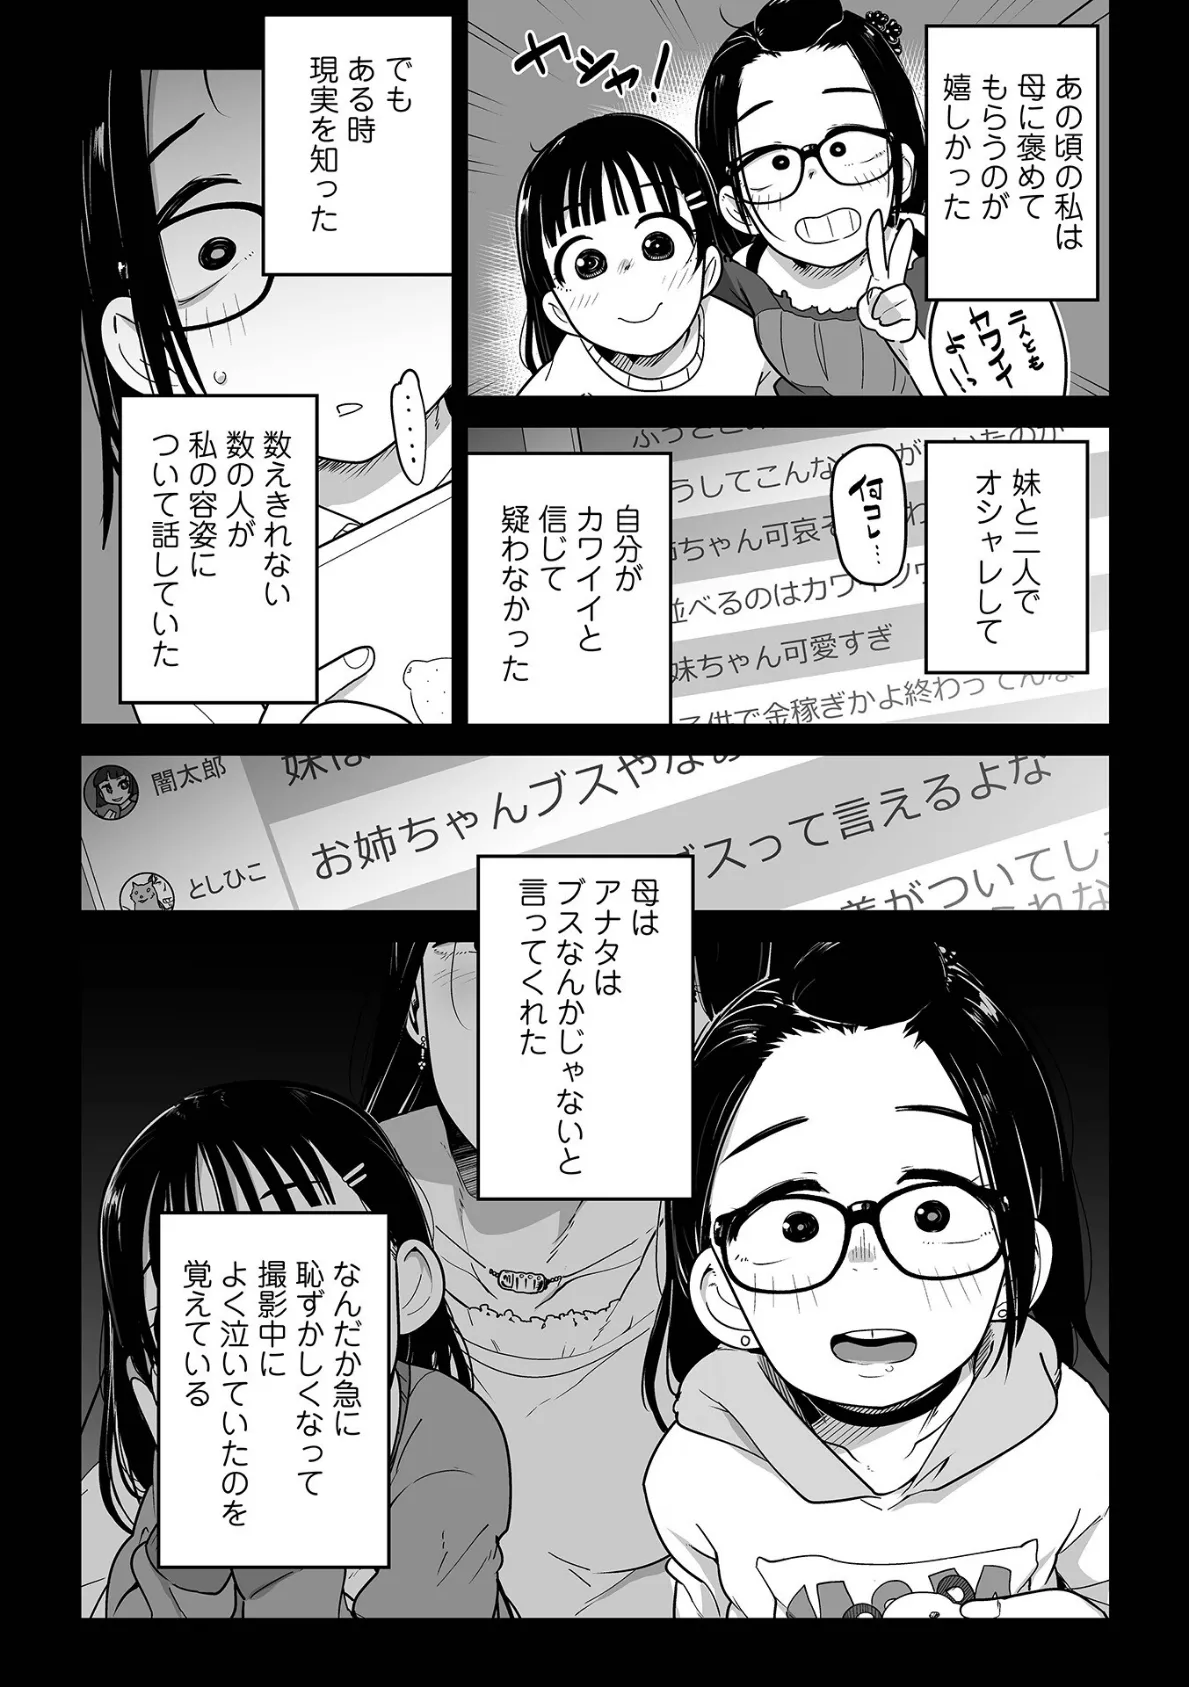 メスガキ vs ワナビおじさんハーフ版 17ページ